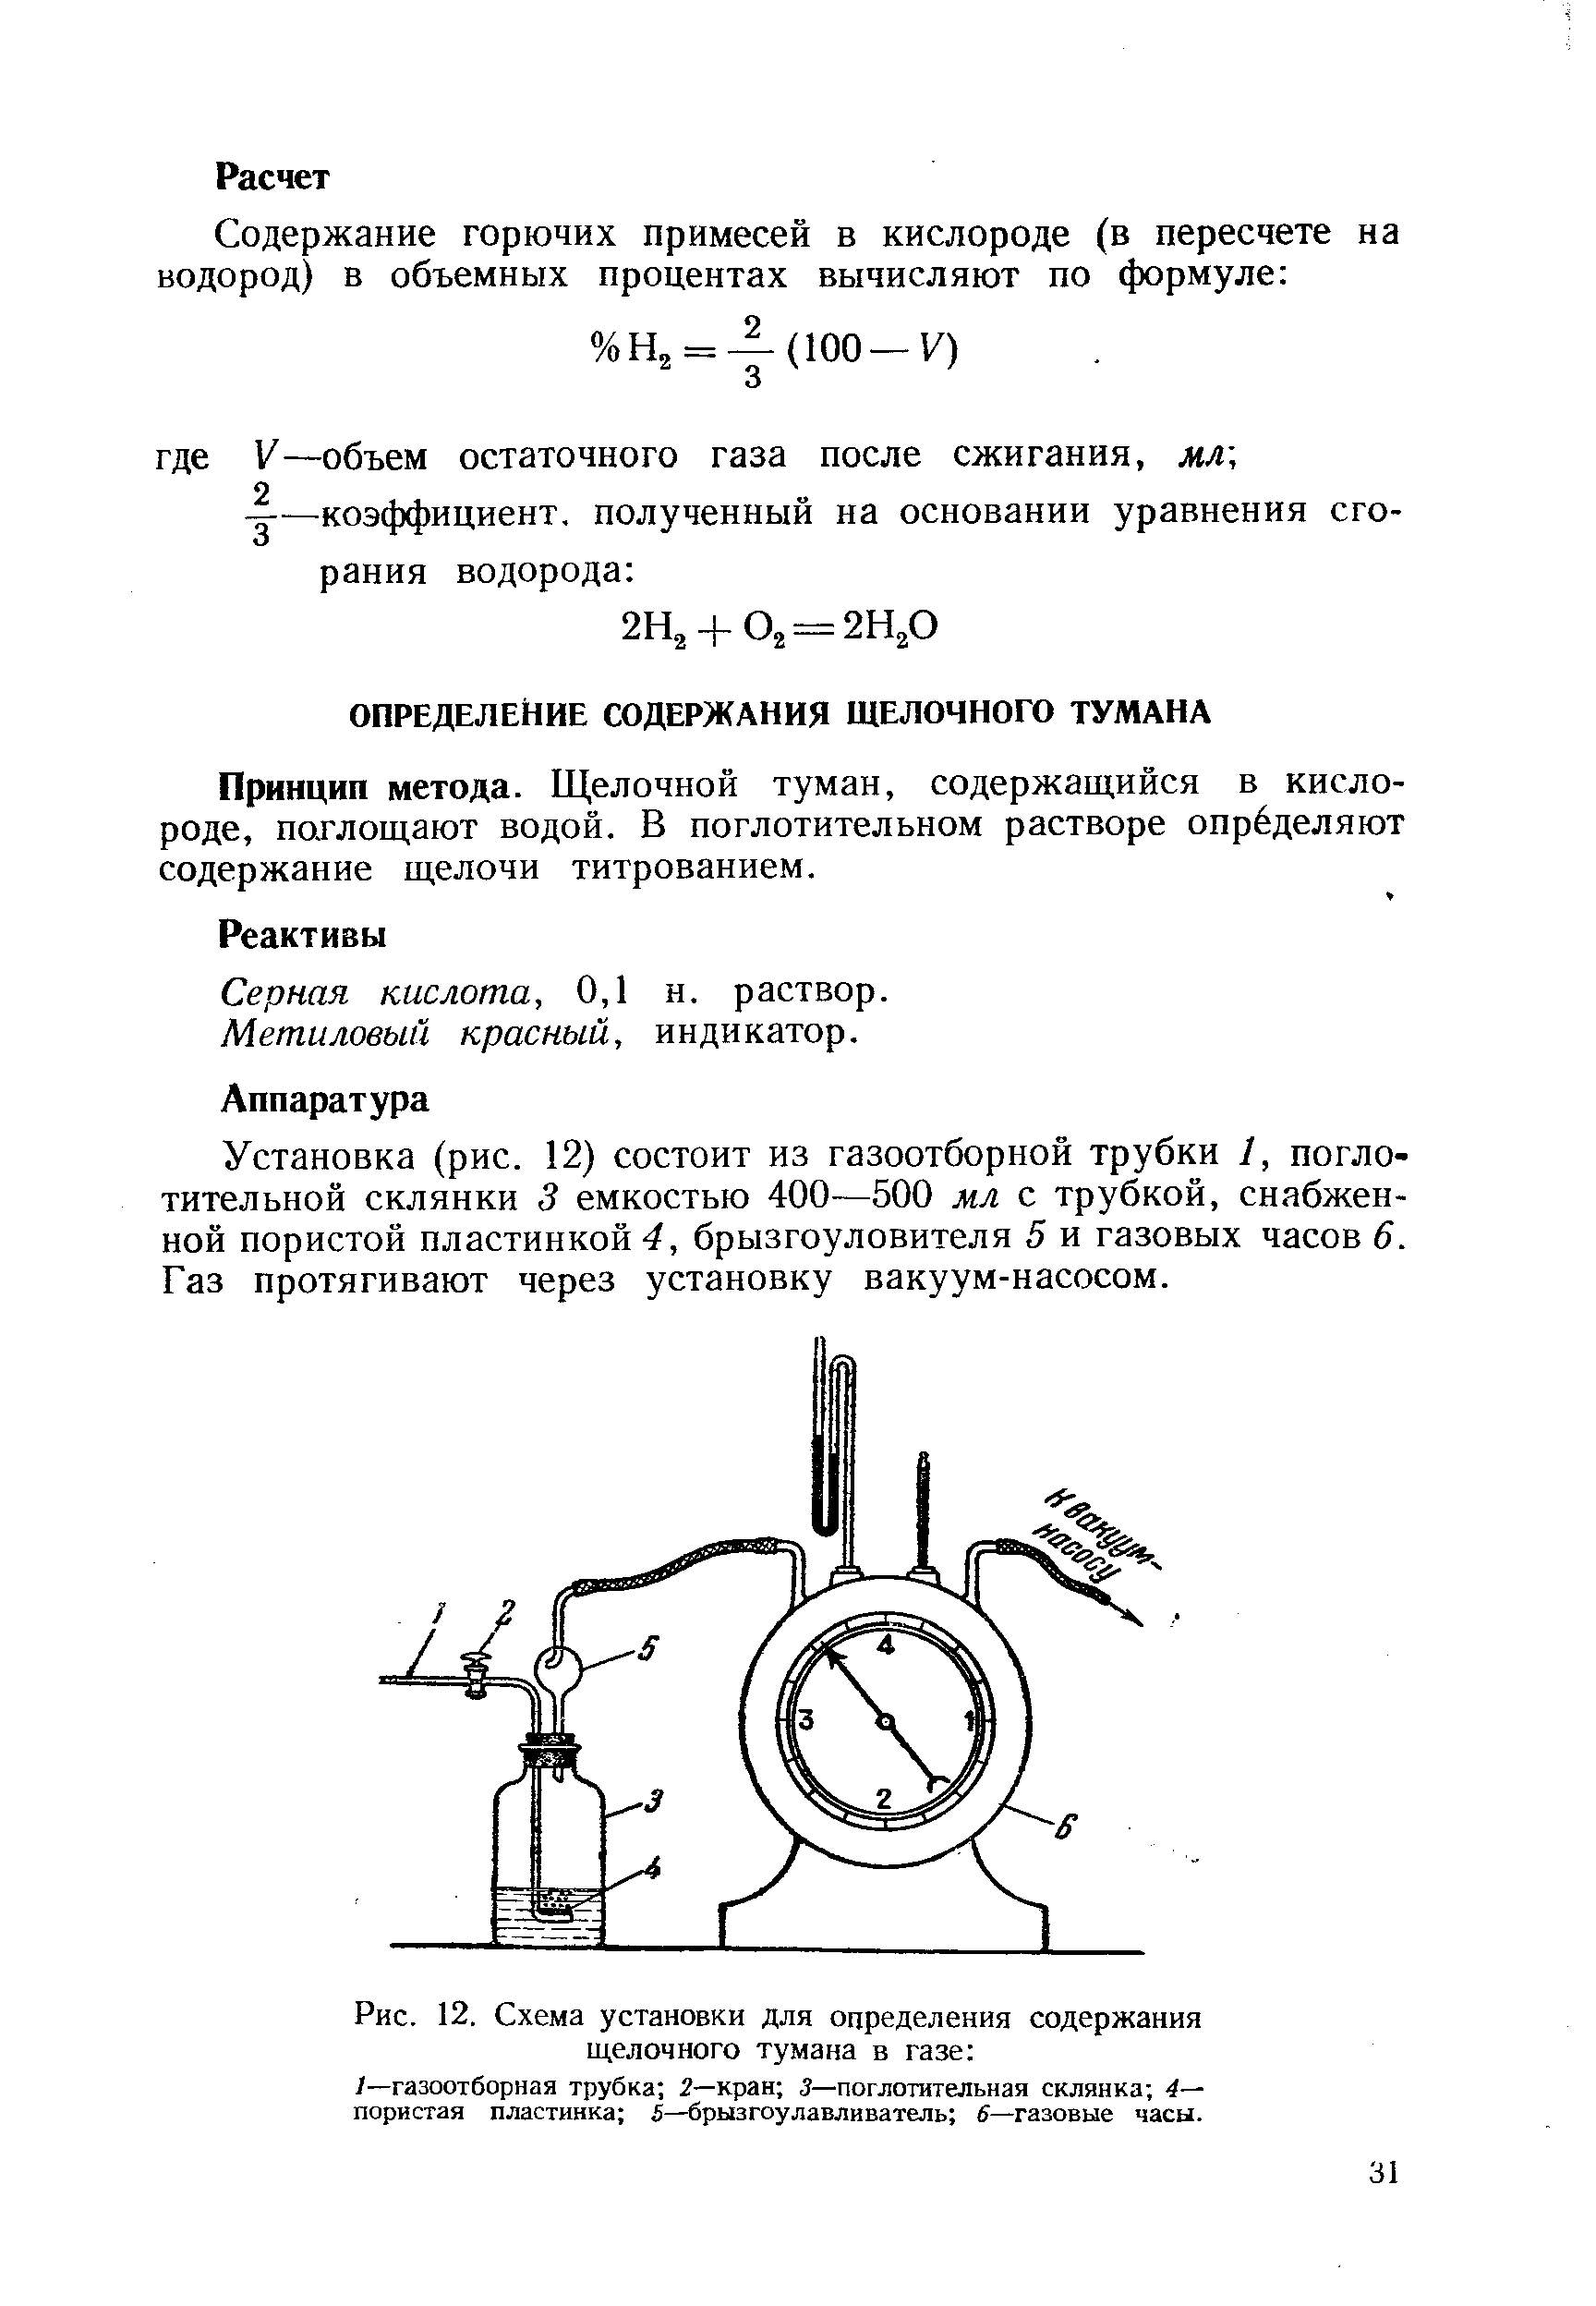 Серная кислота, 0,1 н. раствор.